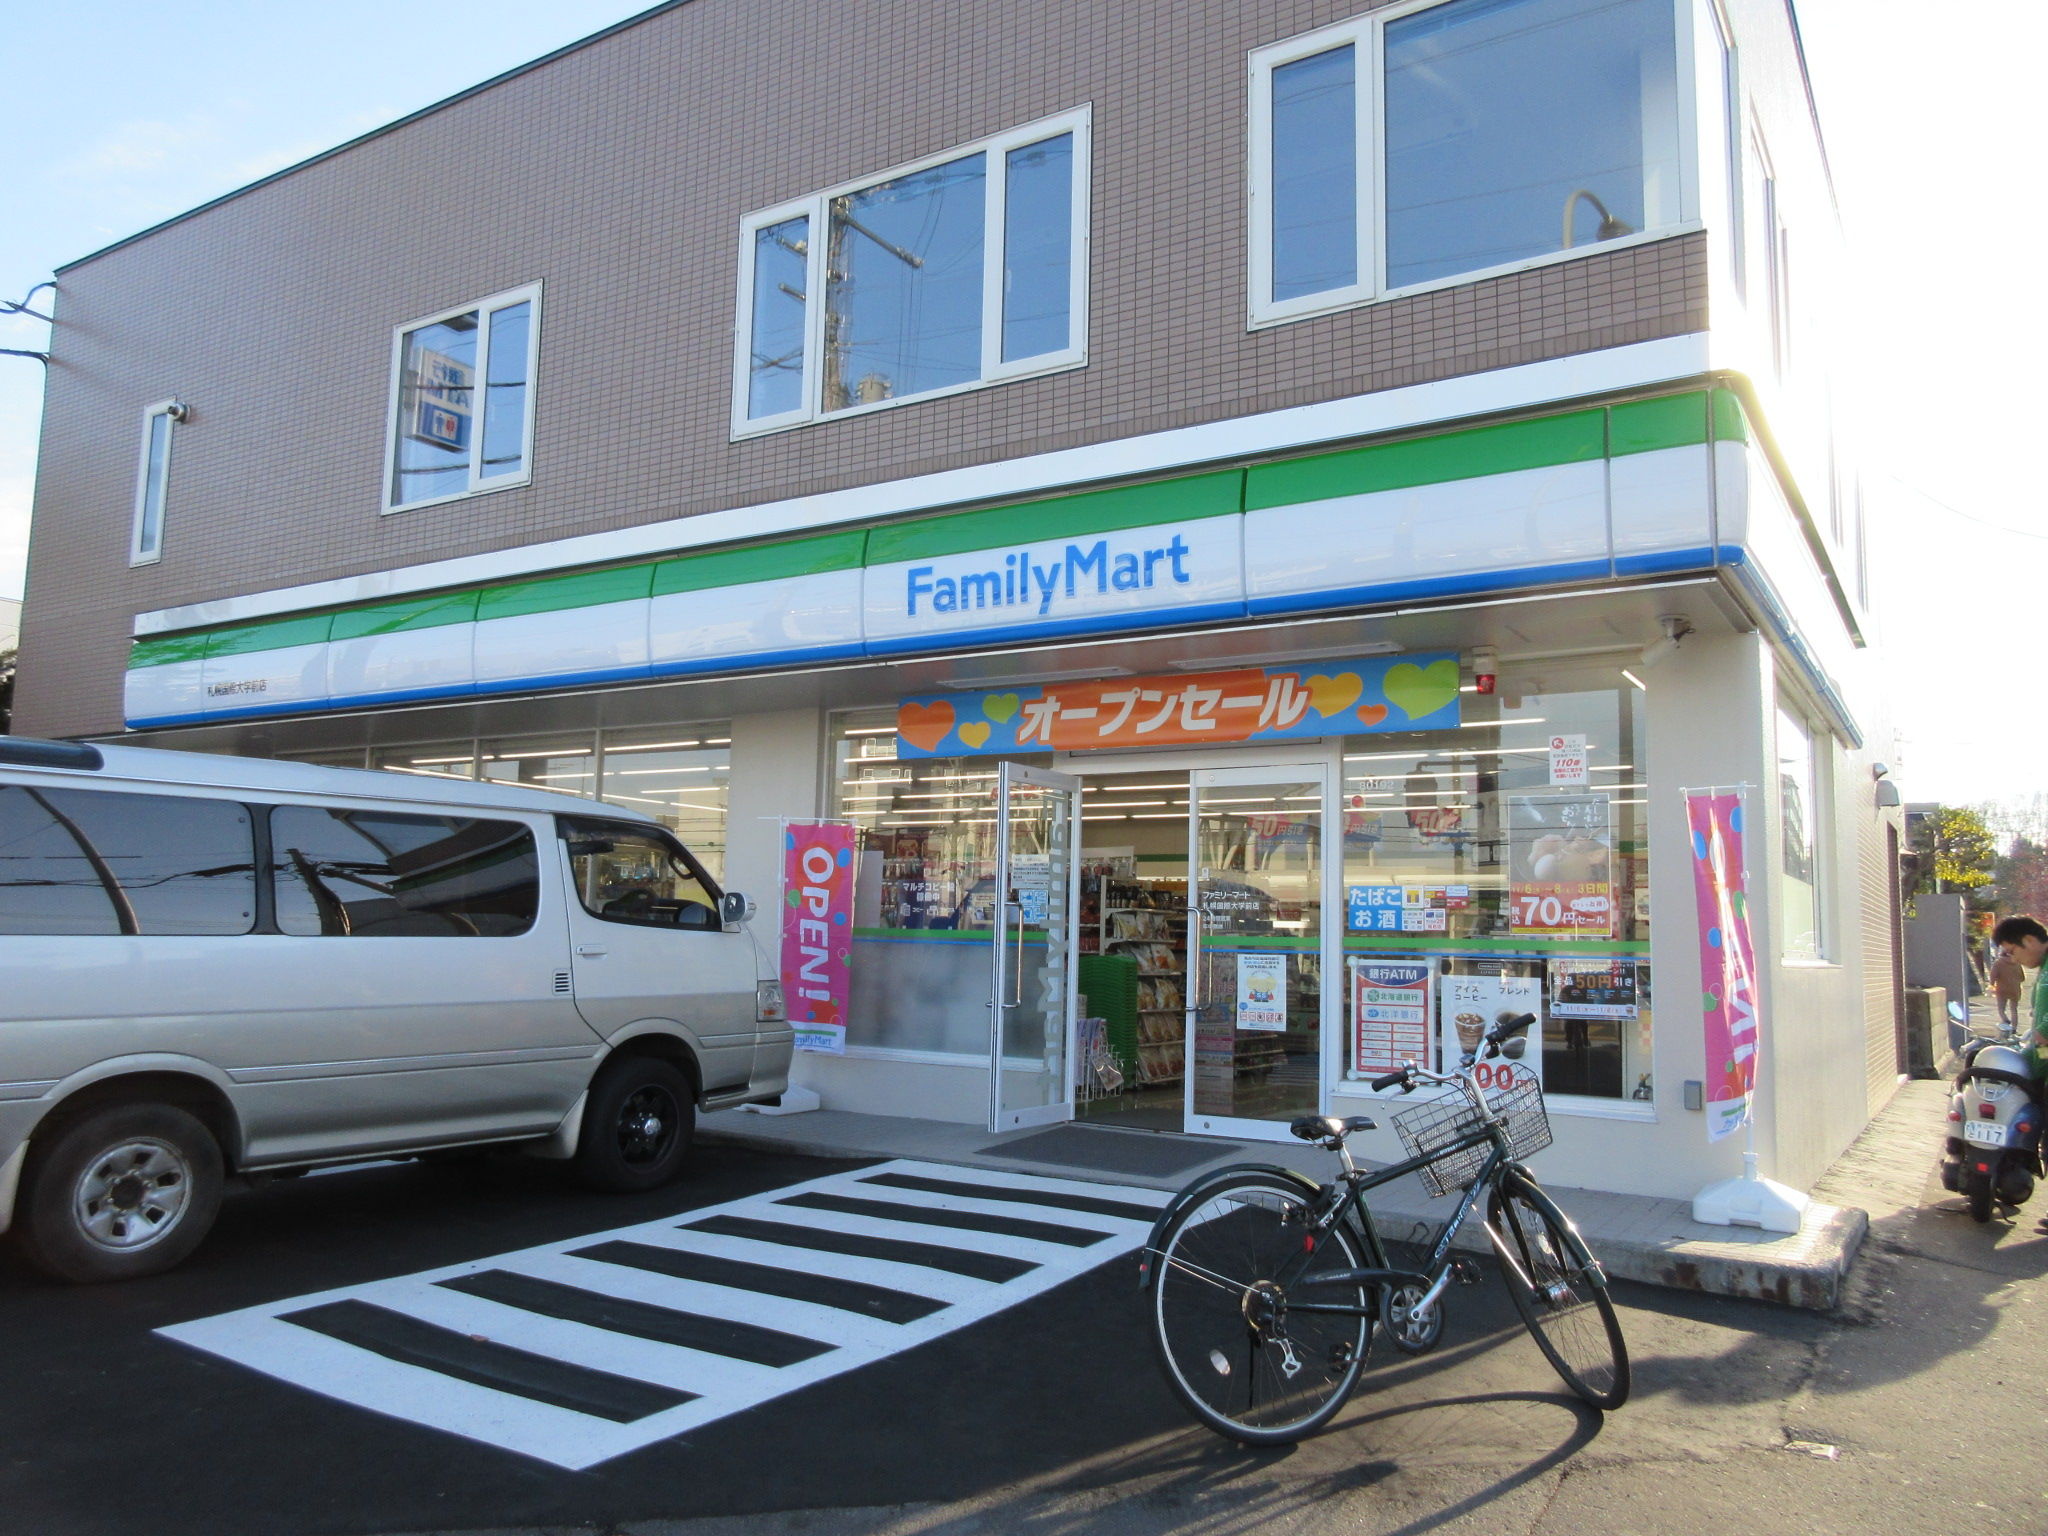 ファミリーマート札幌国際大学前店 トイレ設備調査日記atosatu